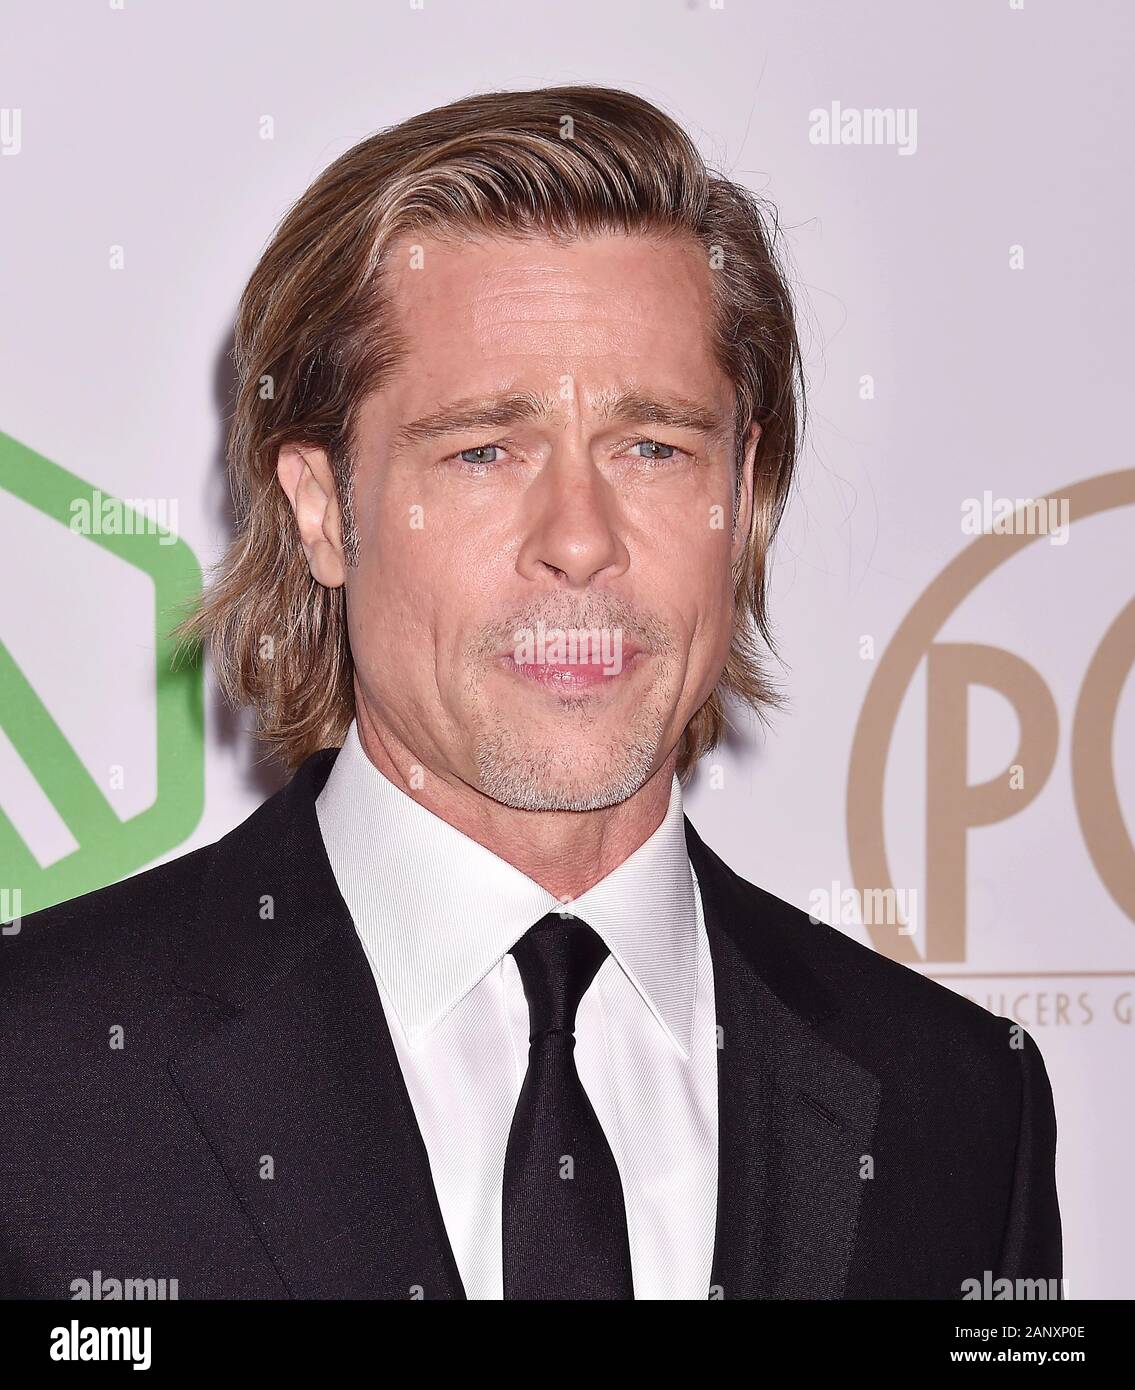 HOLLYWOOD, CA - 18 de enero: Brad Pitt asiste a la 31ª Anual de productores Guild Awards en el Hollywood Palladium el 18 de enero de 2020 en Los Angeles, California. Foto de stock